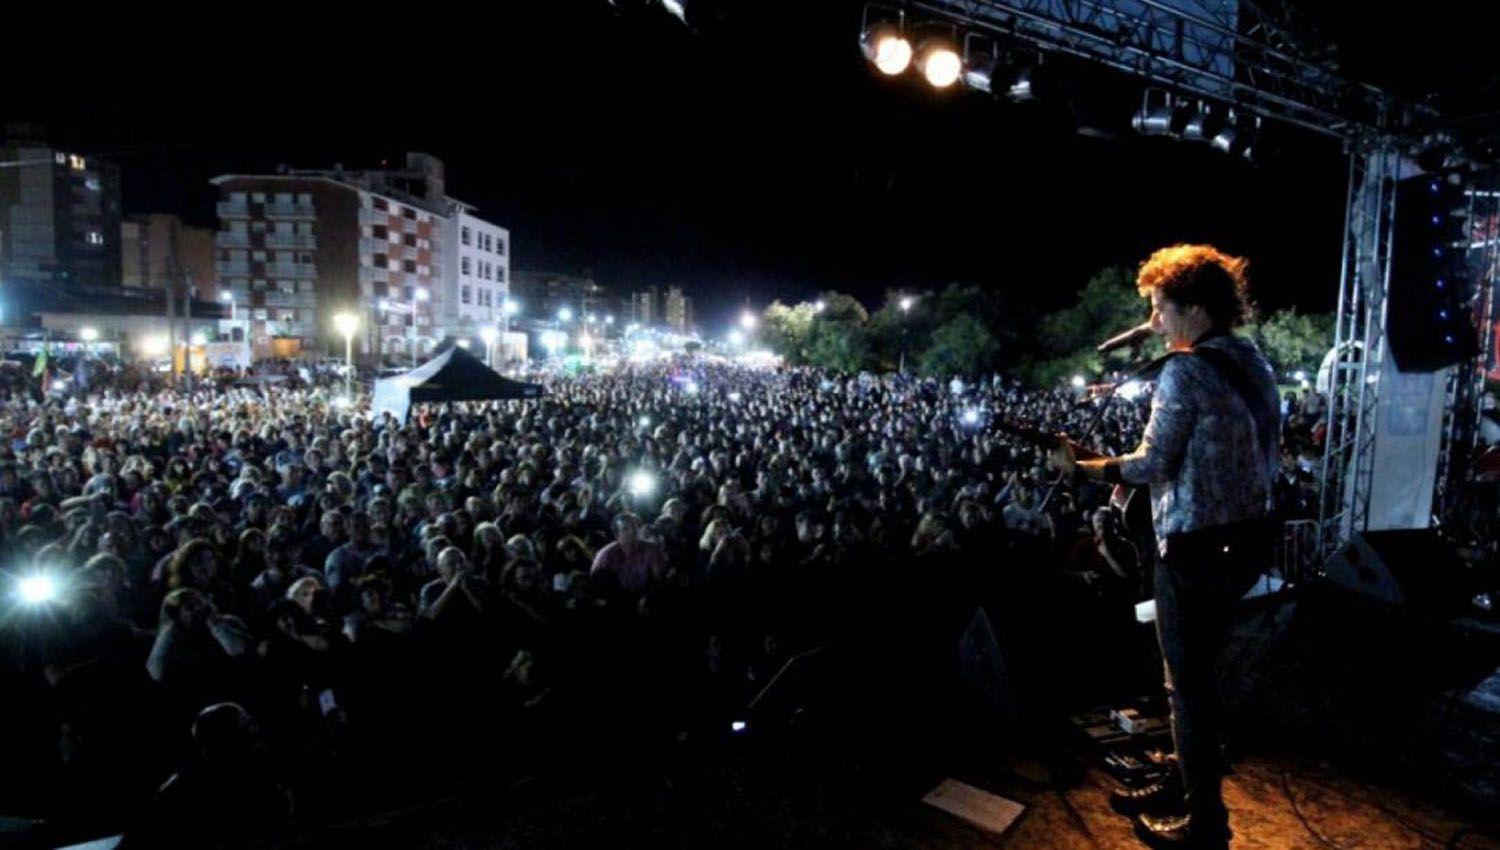 Mar del Plata ofrece shows gratuitos  en espacios puacuteblicos